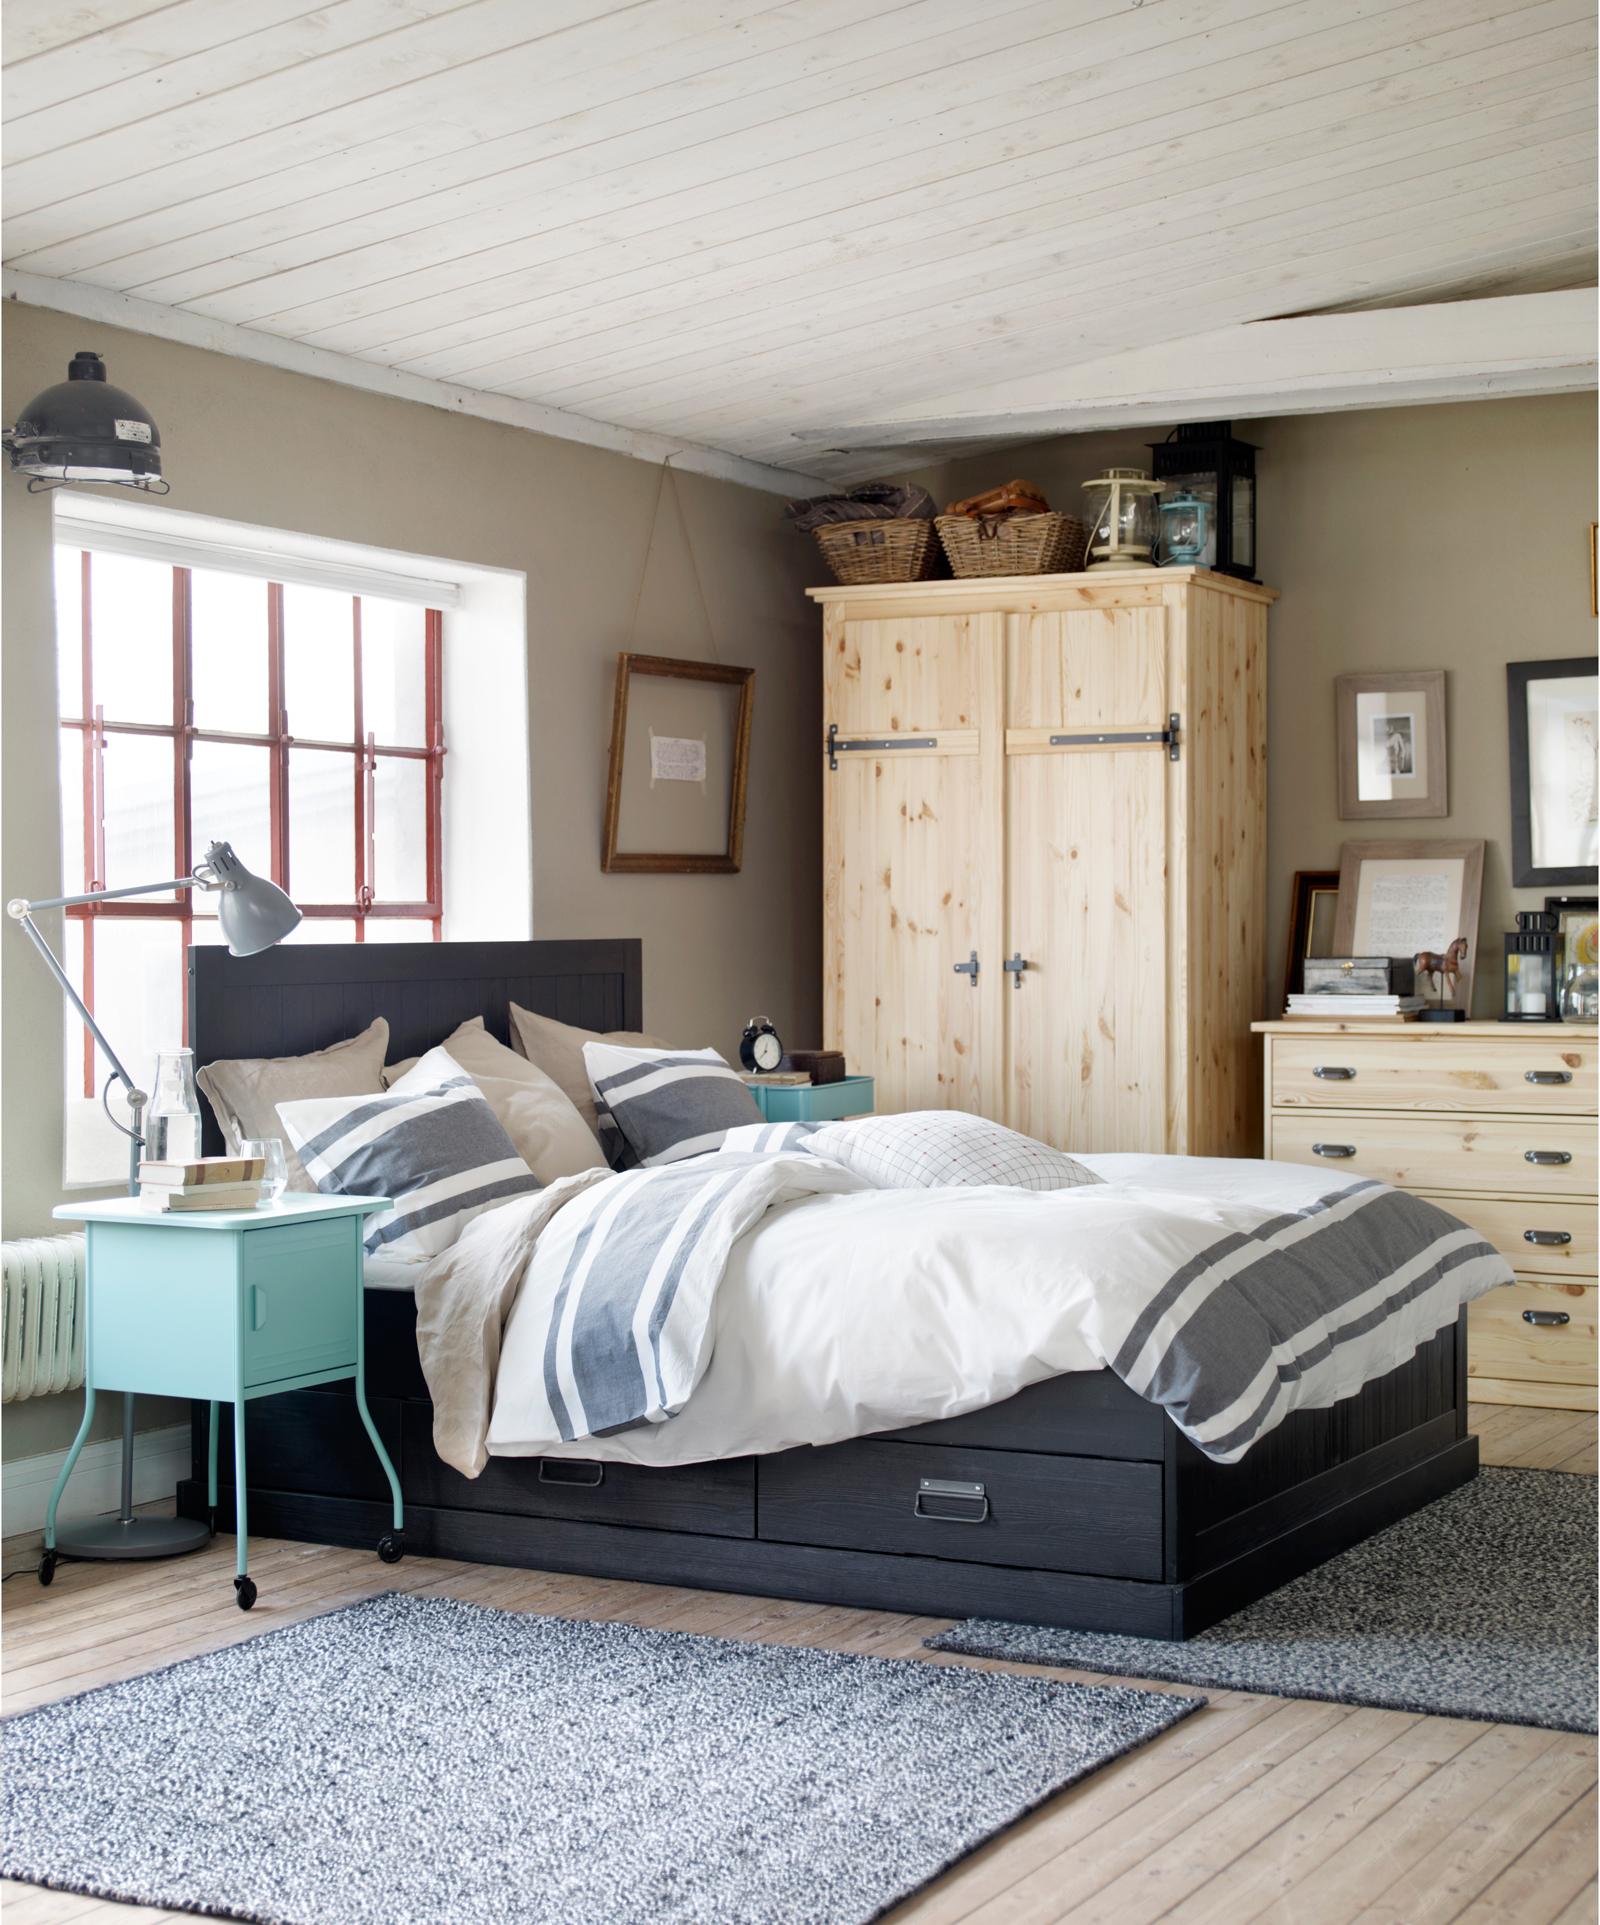 Verschiedenfarbiges Holz im Schlafzimmer #dielenboden #bettwäsche #ikea #weißeholzbalkendecke ©Inter IKEA Systems B.V.